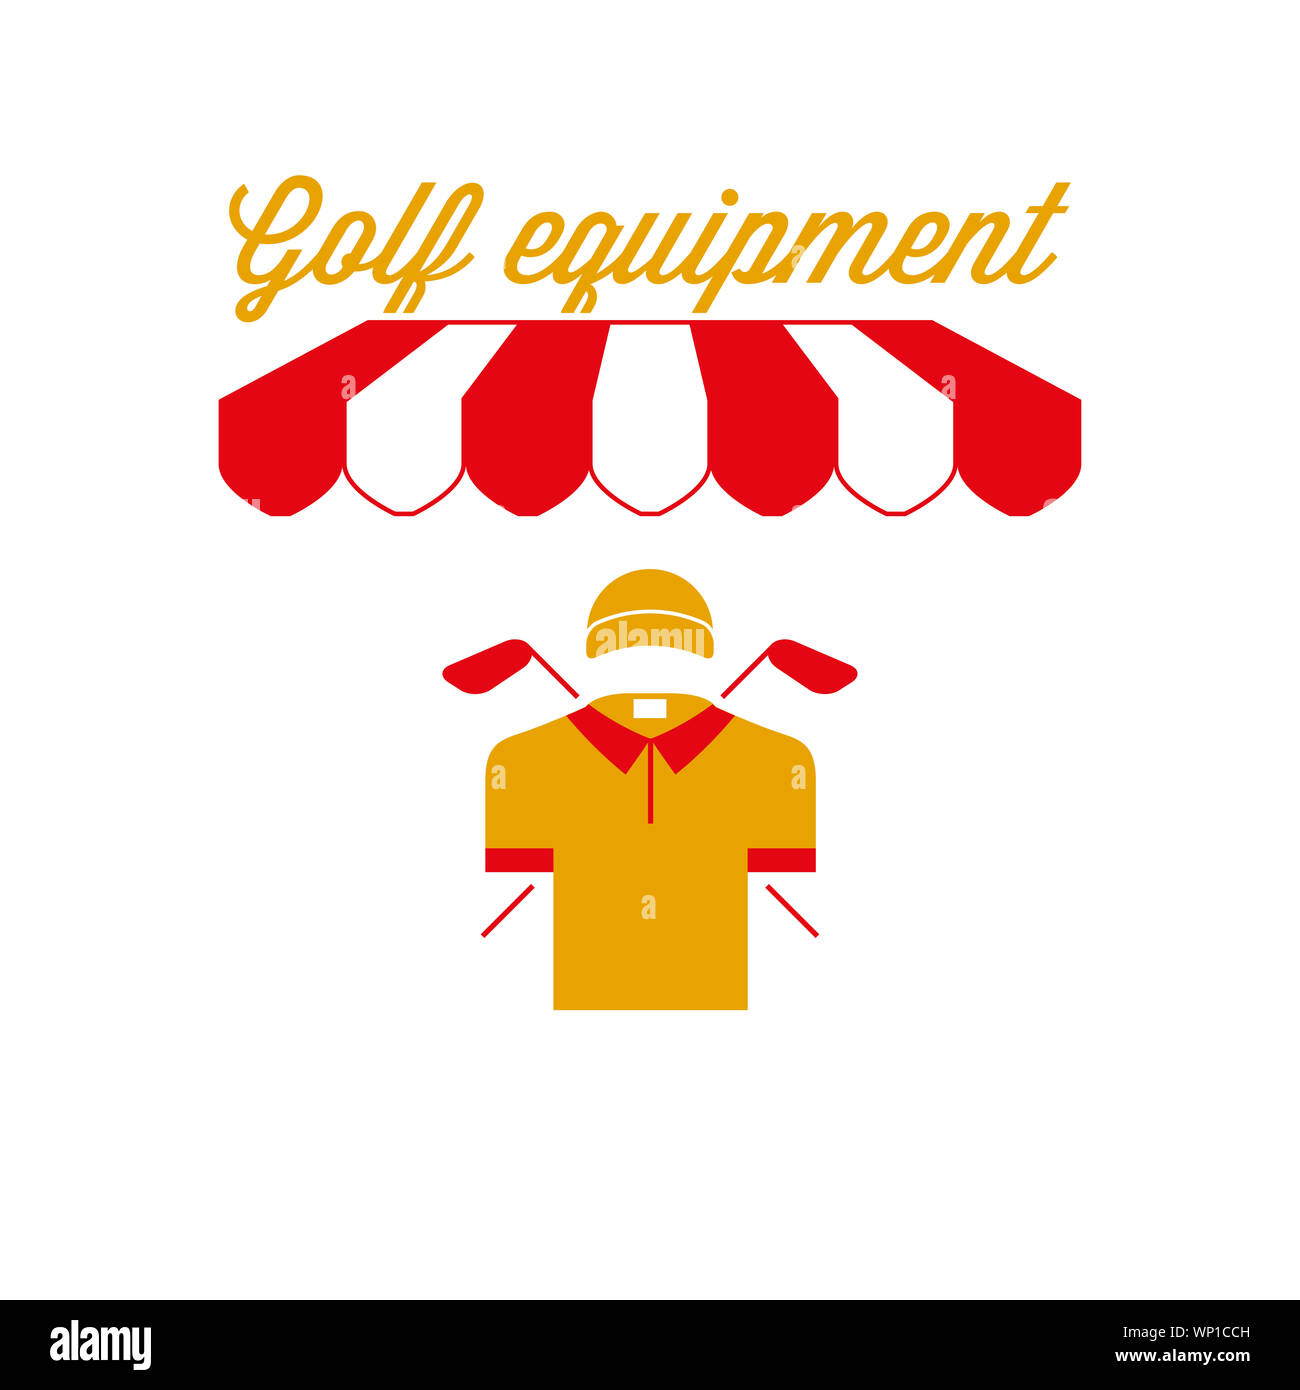 Golfausrüstung Zeichen, Emblem. Rot-weiß gestreiften Markise Zelt. Polo Shirt, Golf Club Symbol. Goldene und rote Farben. Flache Darstellung. Stockfoto